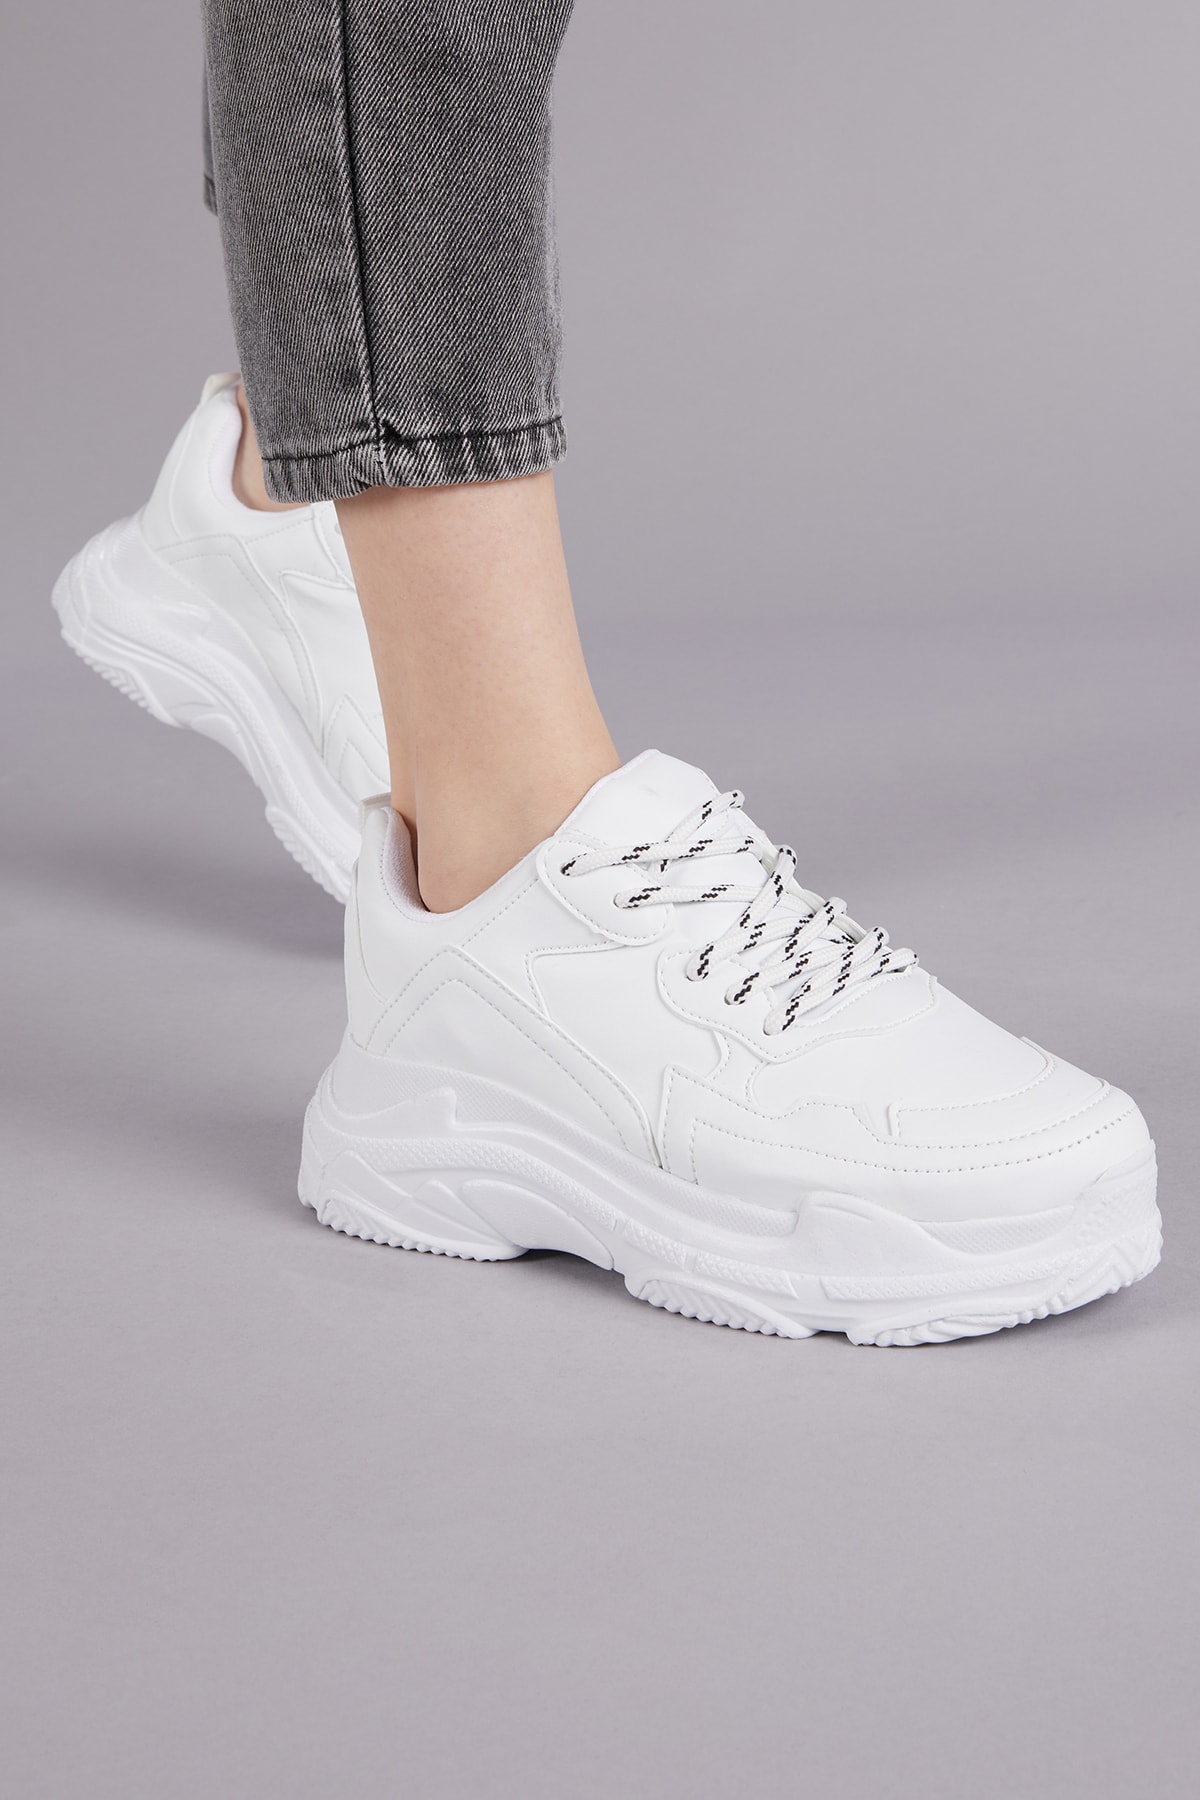 Kadın Spor Ayakkabı Beyaz Cilt Bls-q